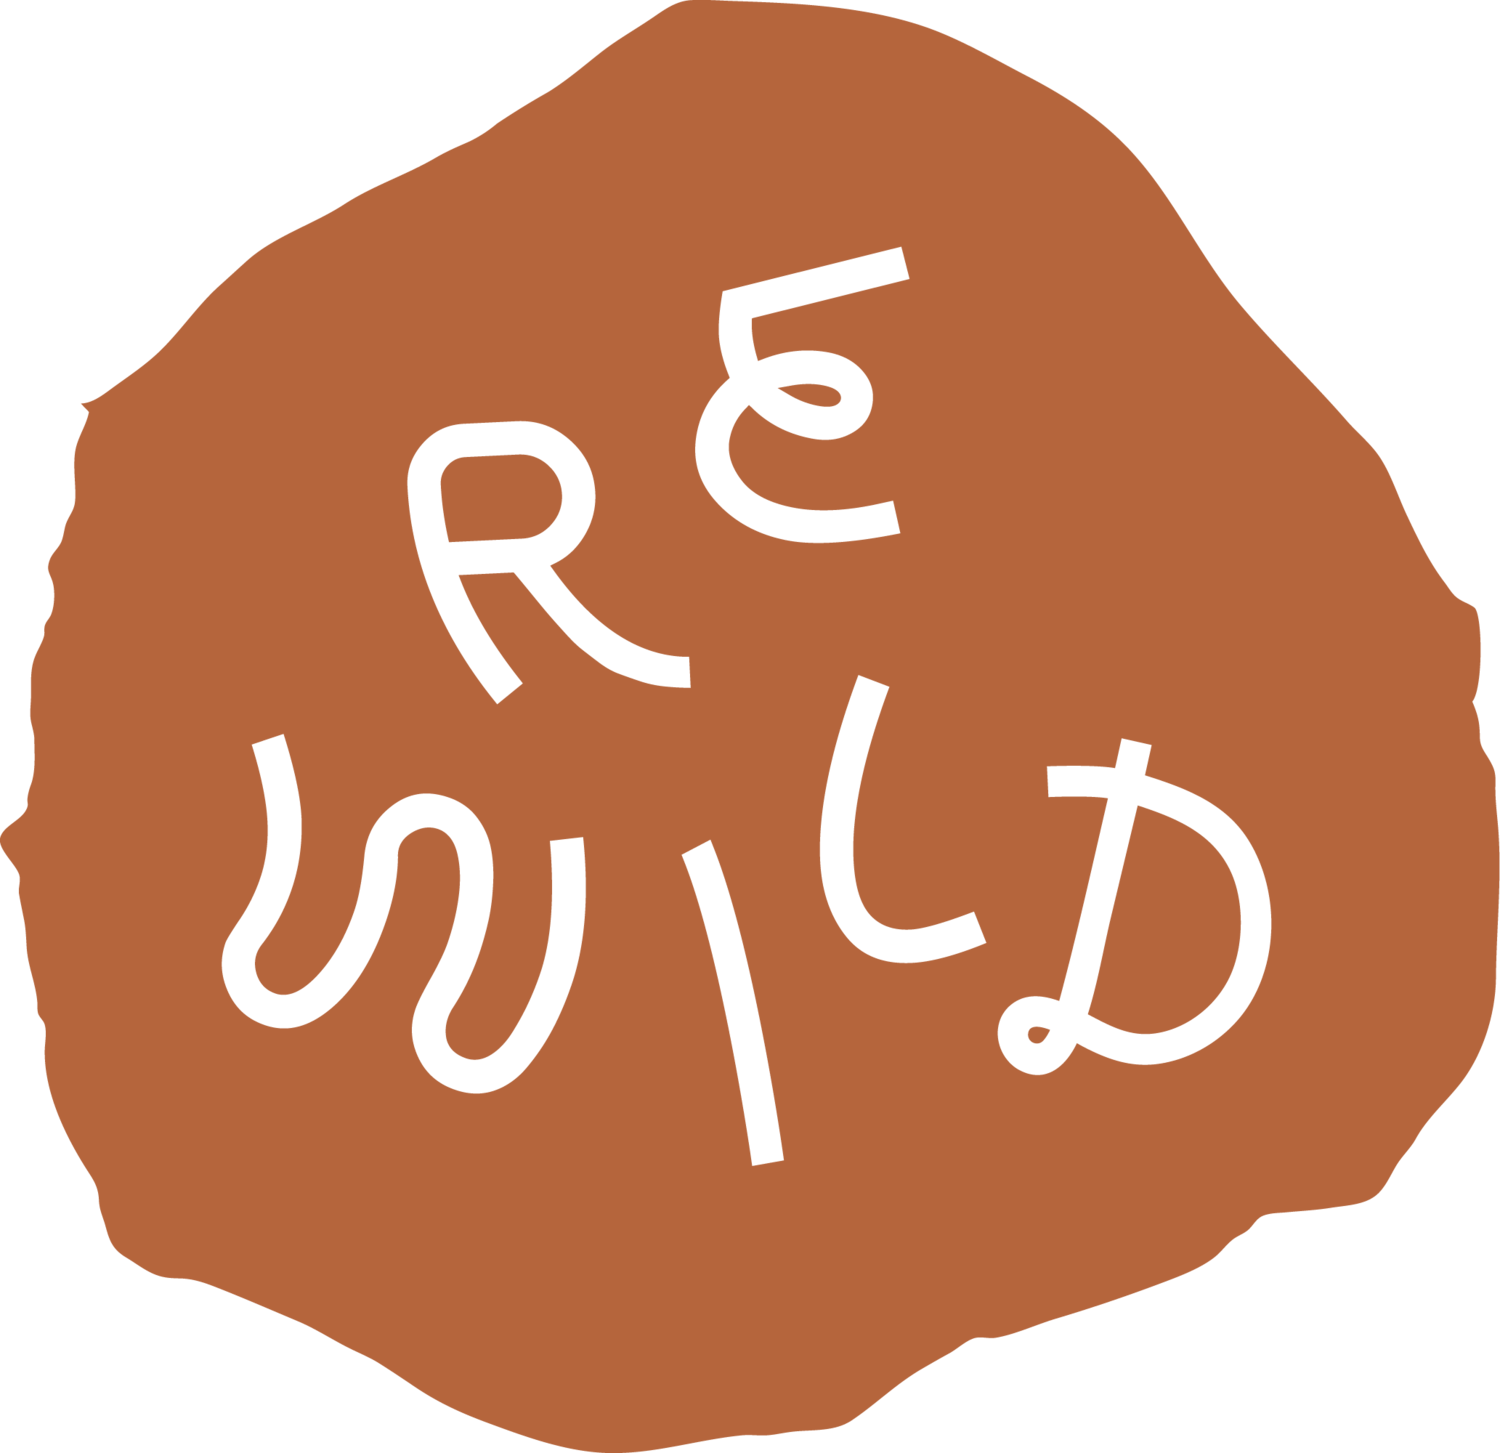 Rewild Design